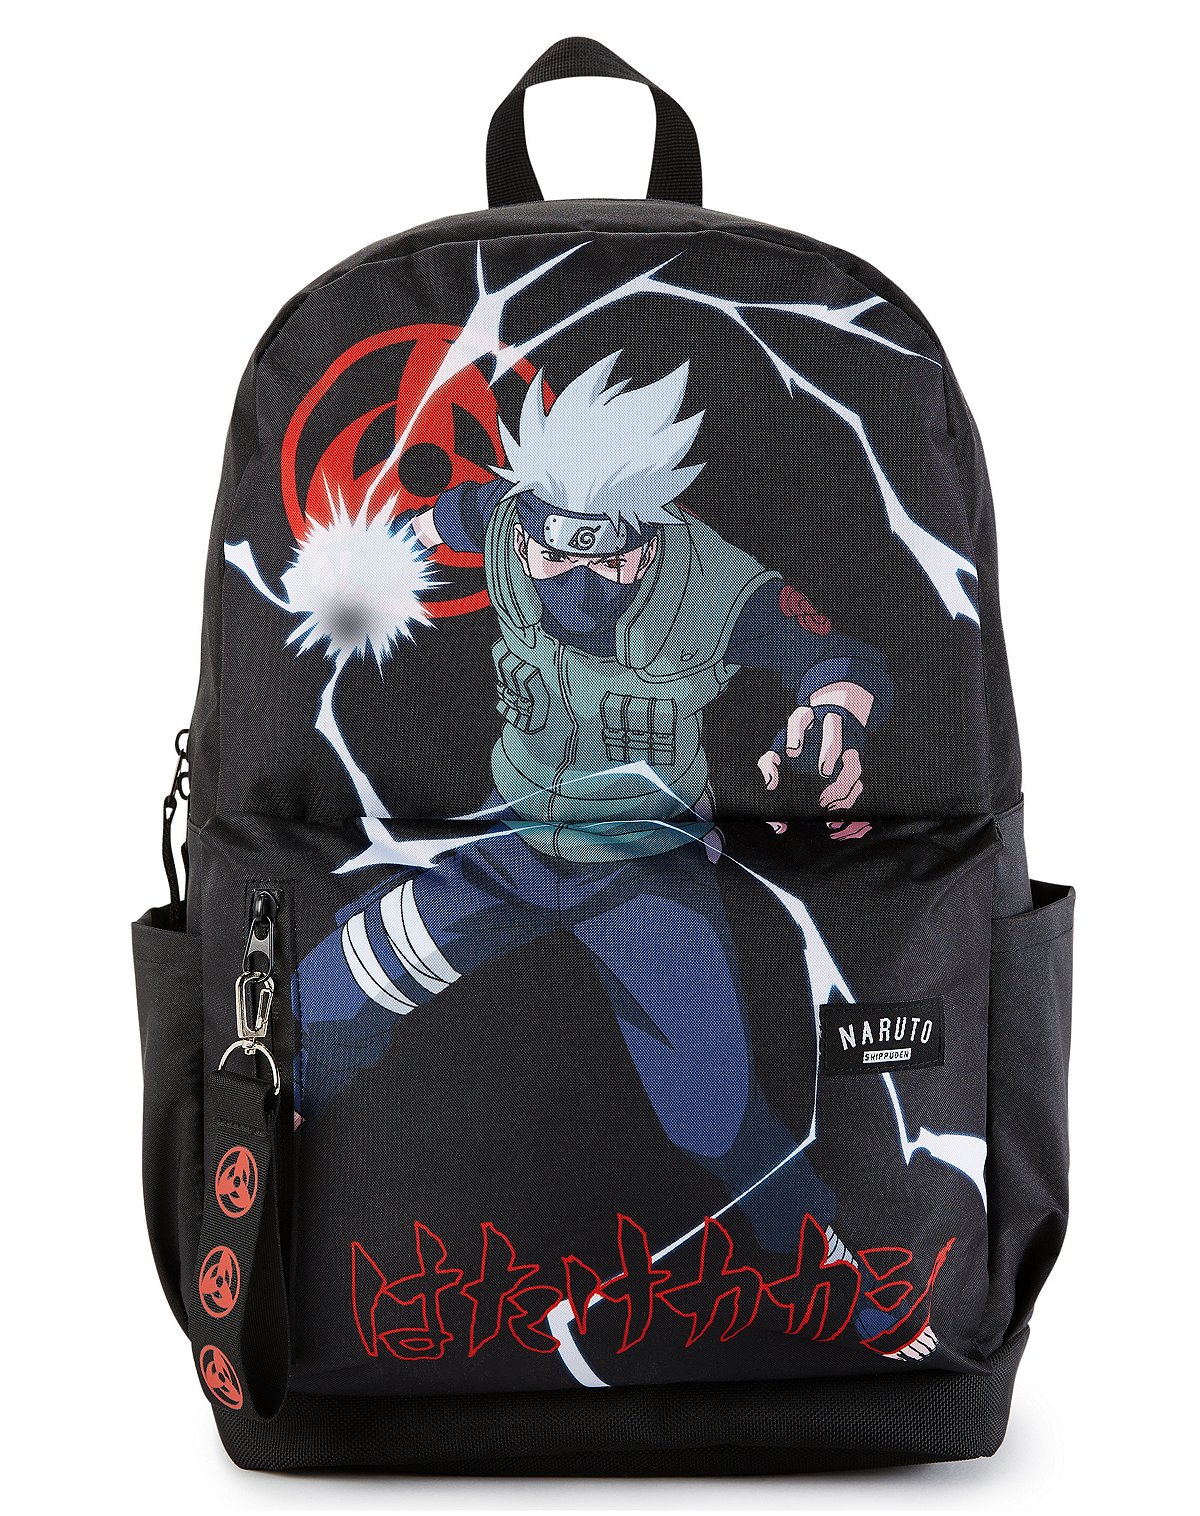 Kakashi Pose Backpack